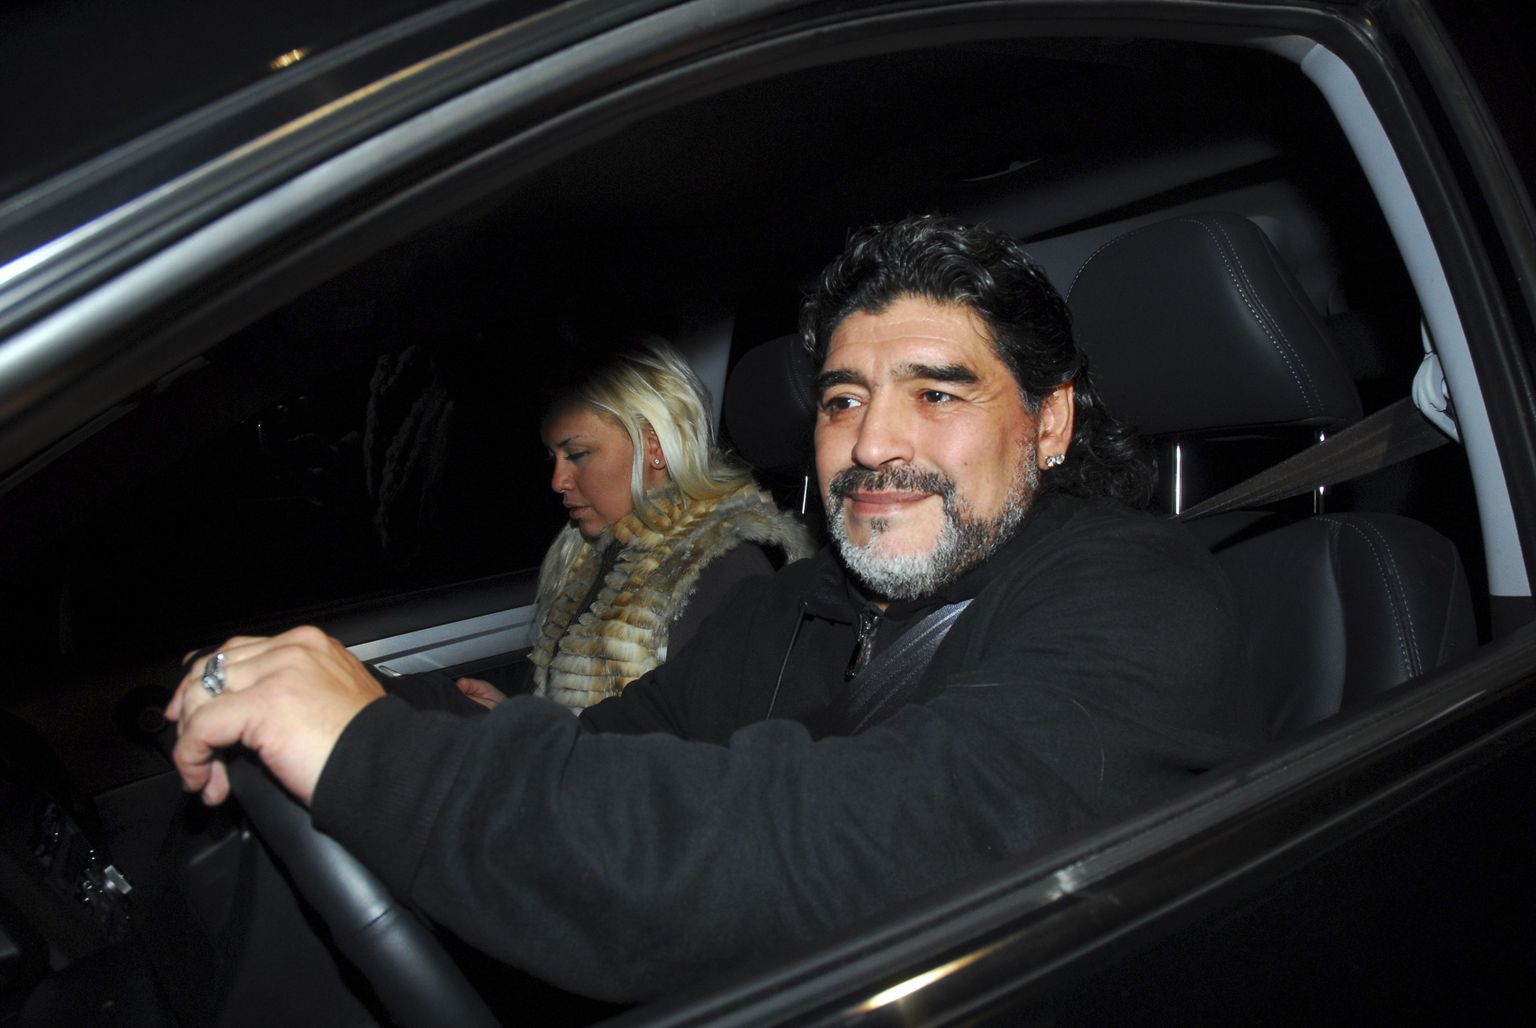 Diego Maradona ja tema kallim Veronica Ojeda paar päeva enne avariid.